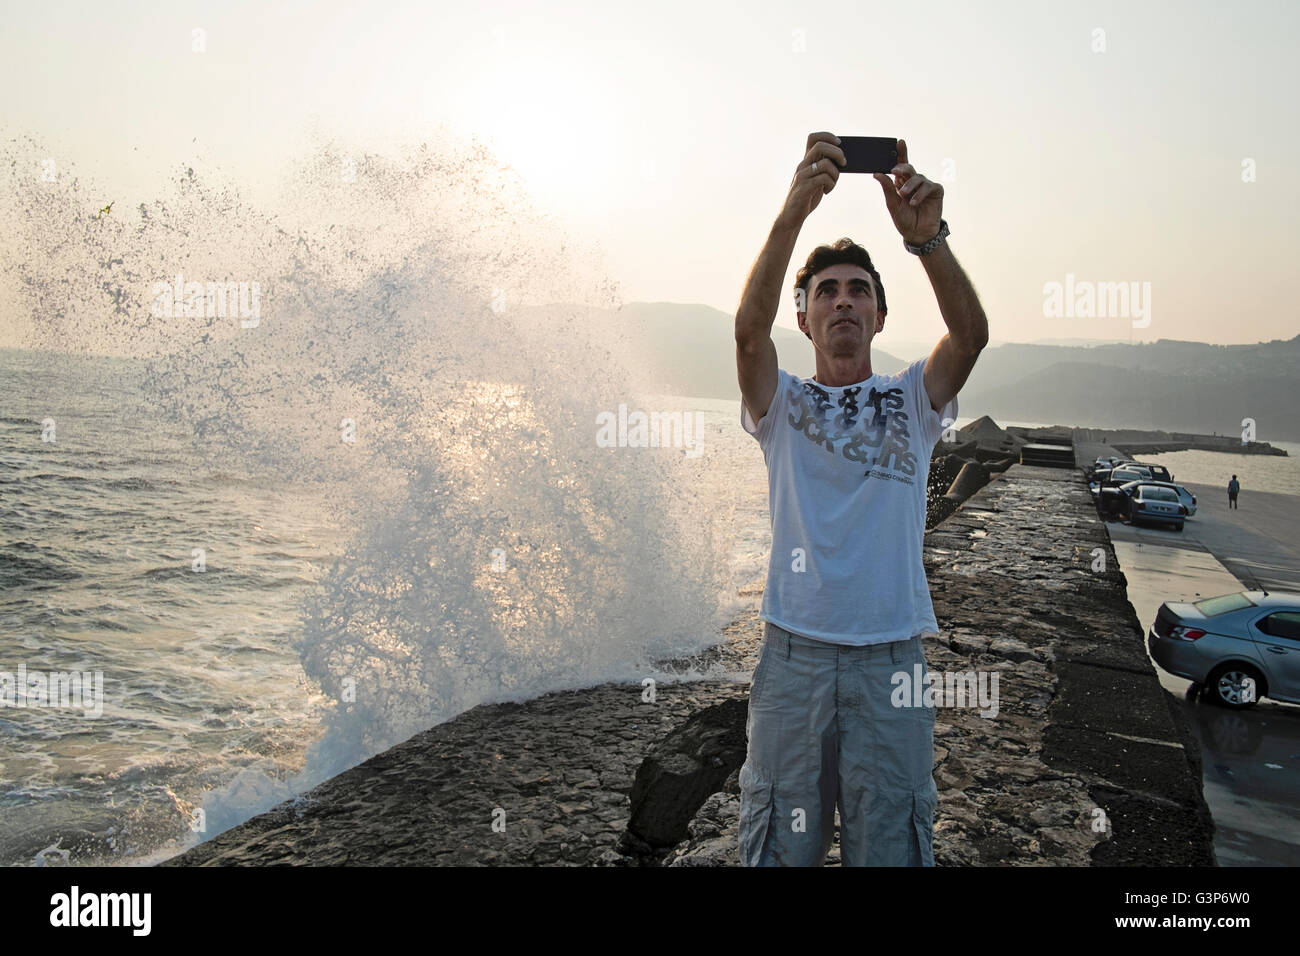 Ein Mann mittleren Alters fängt eine Selfie von sich selbst vor einer Welle stürzt auf Felsen in Amasra, Bartin, Türkei Stockfoto